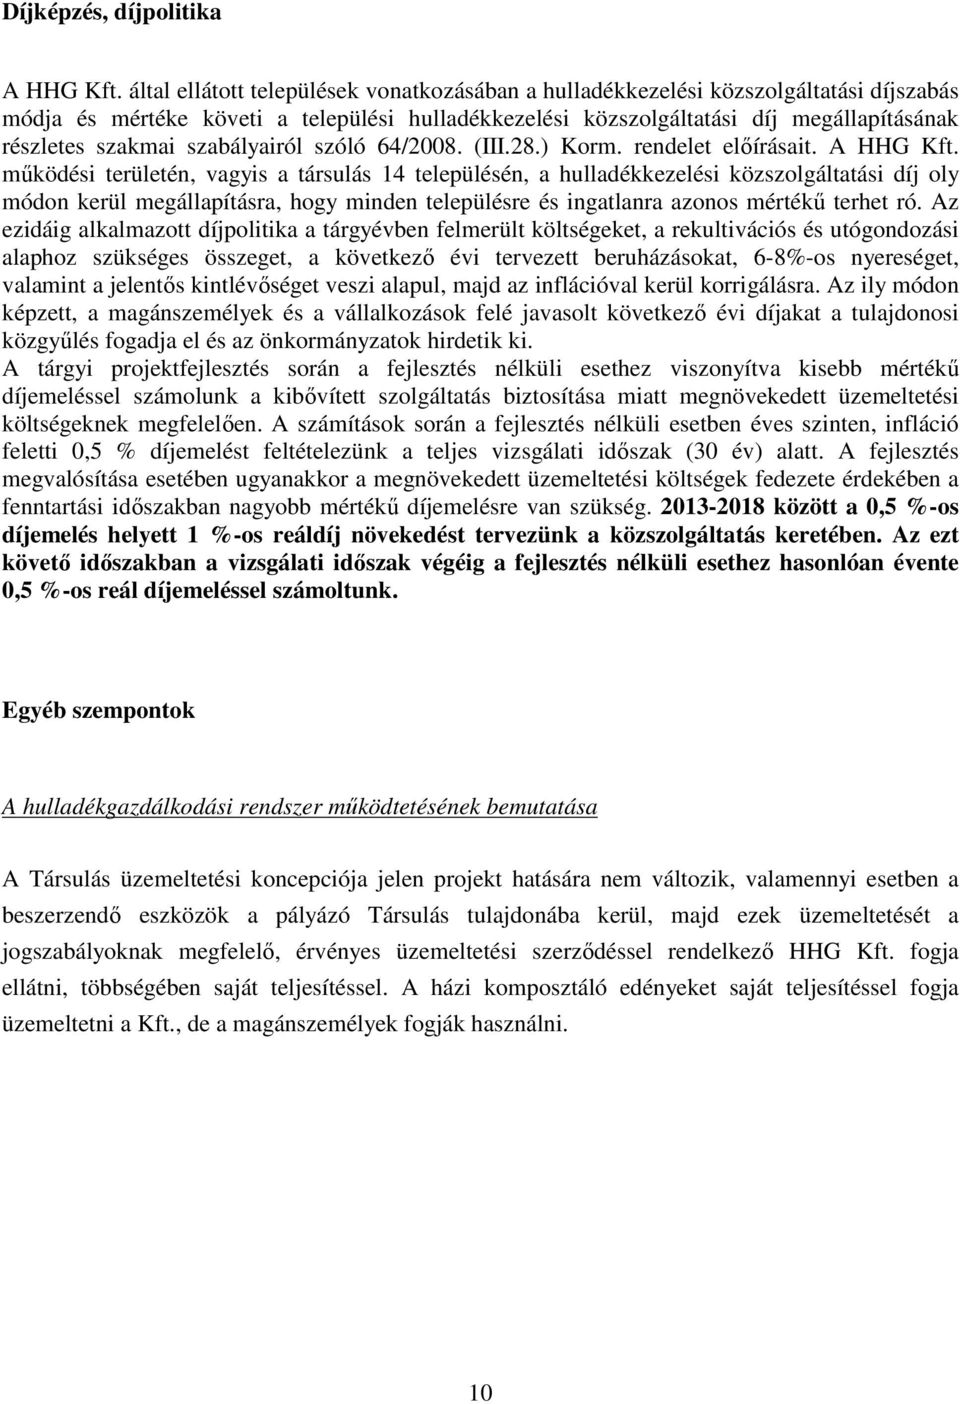 szabályairól szóló 64/2008. (III.28.) Korm. rendelet előírásait. A HHG Kft.